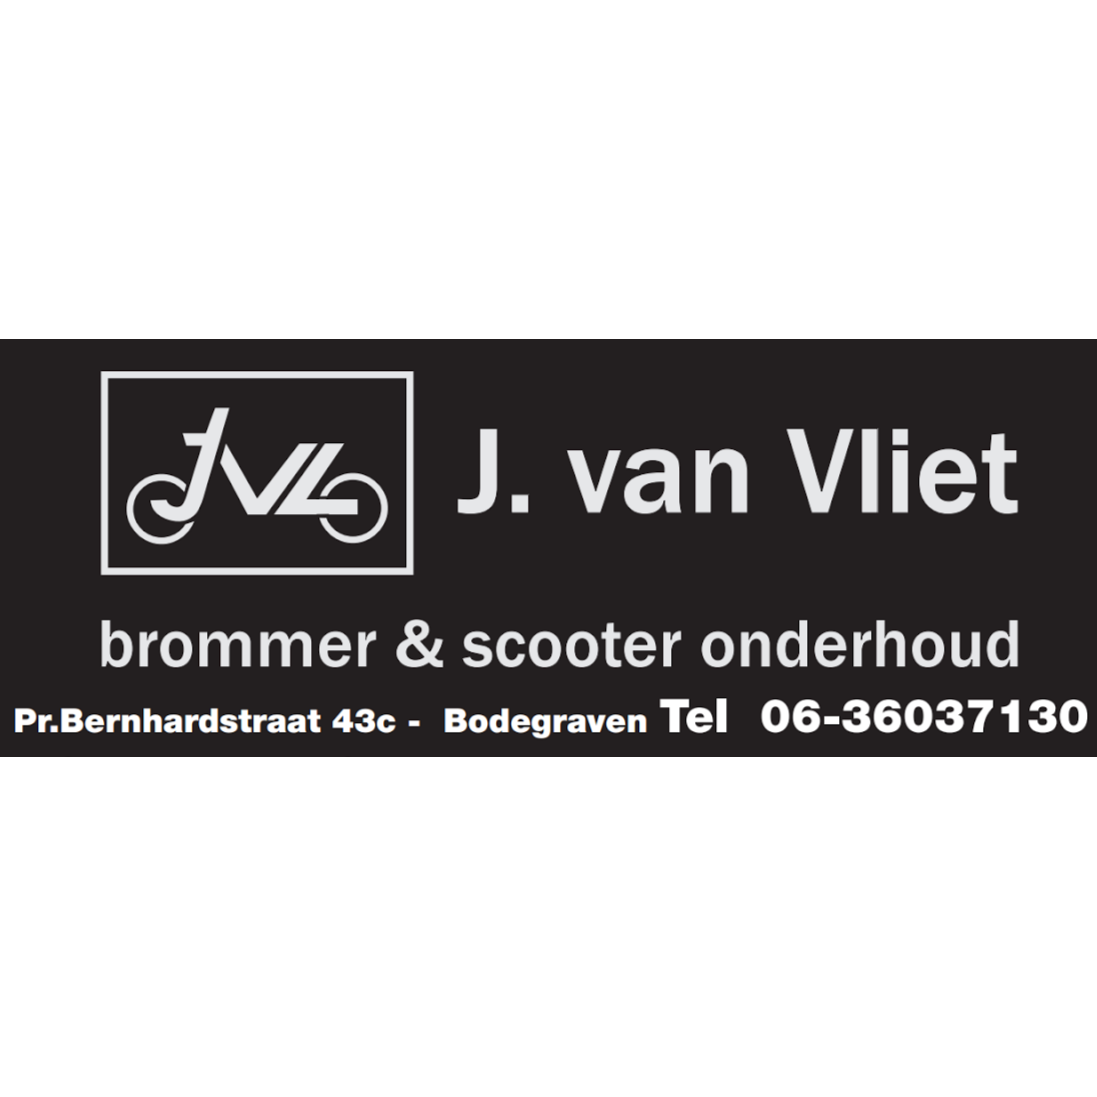 Vliet J van Brommer en Scooter Onderhoud Logo